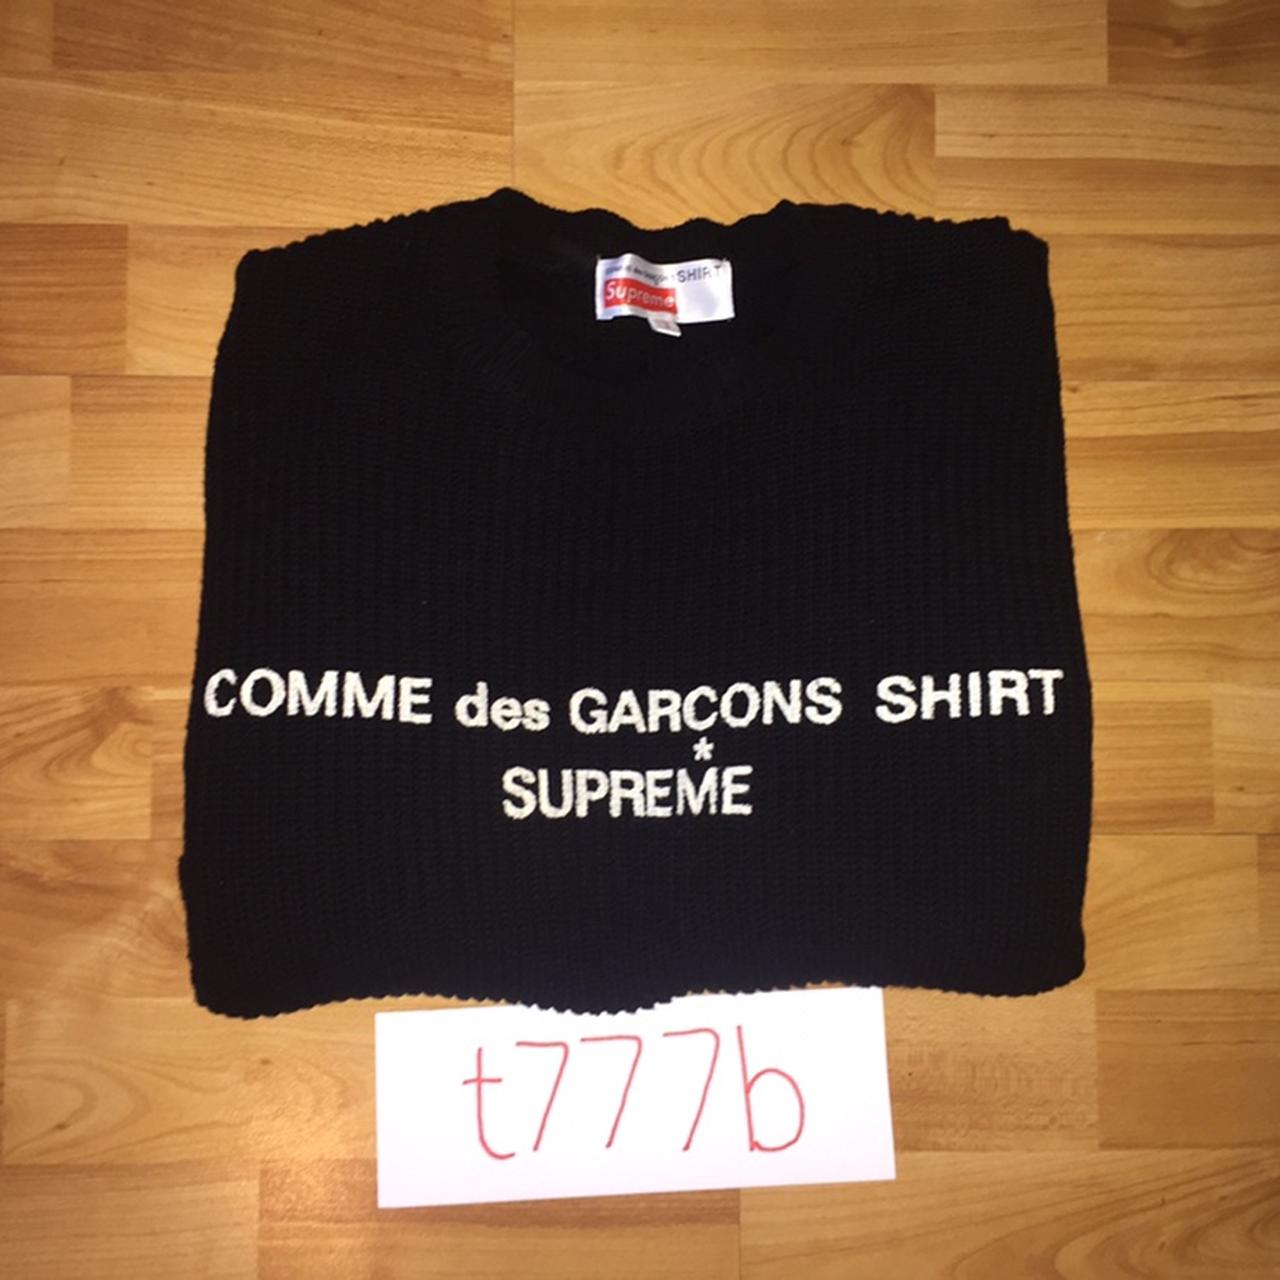 Supreme x Comme Des Garcons Knit Sweater - Black - Depop